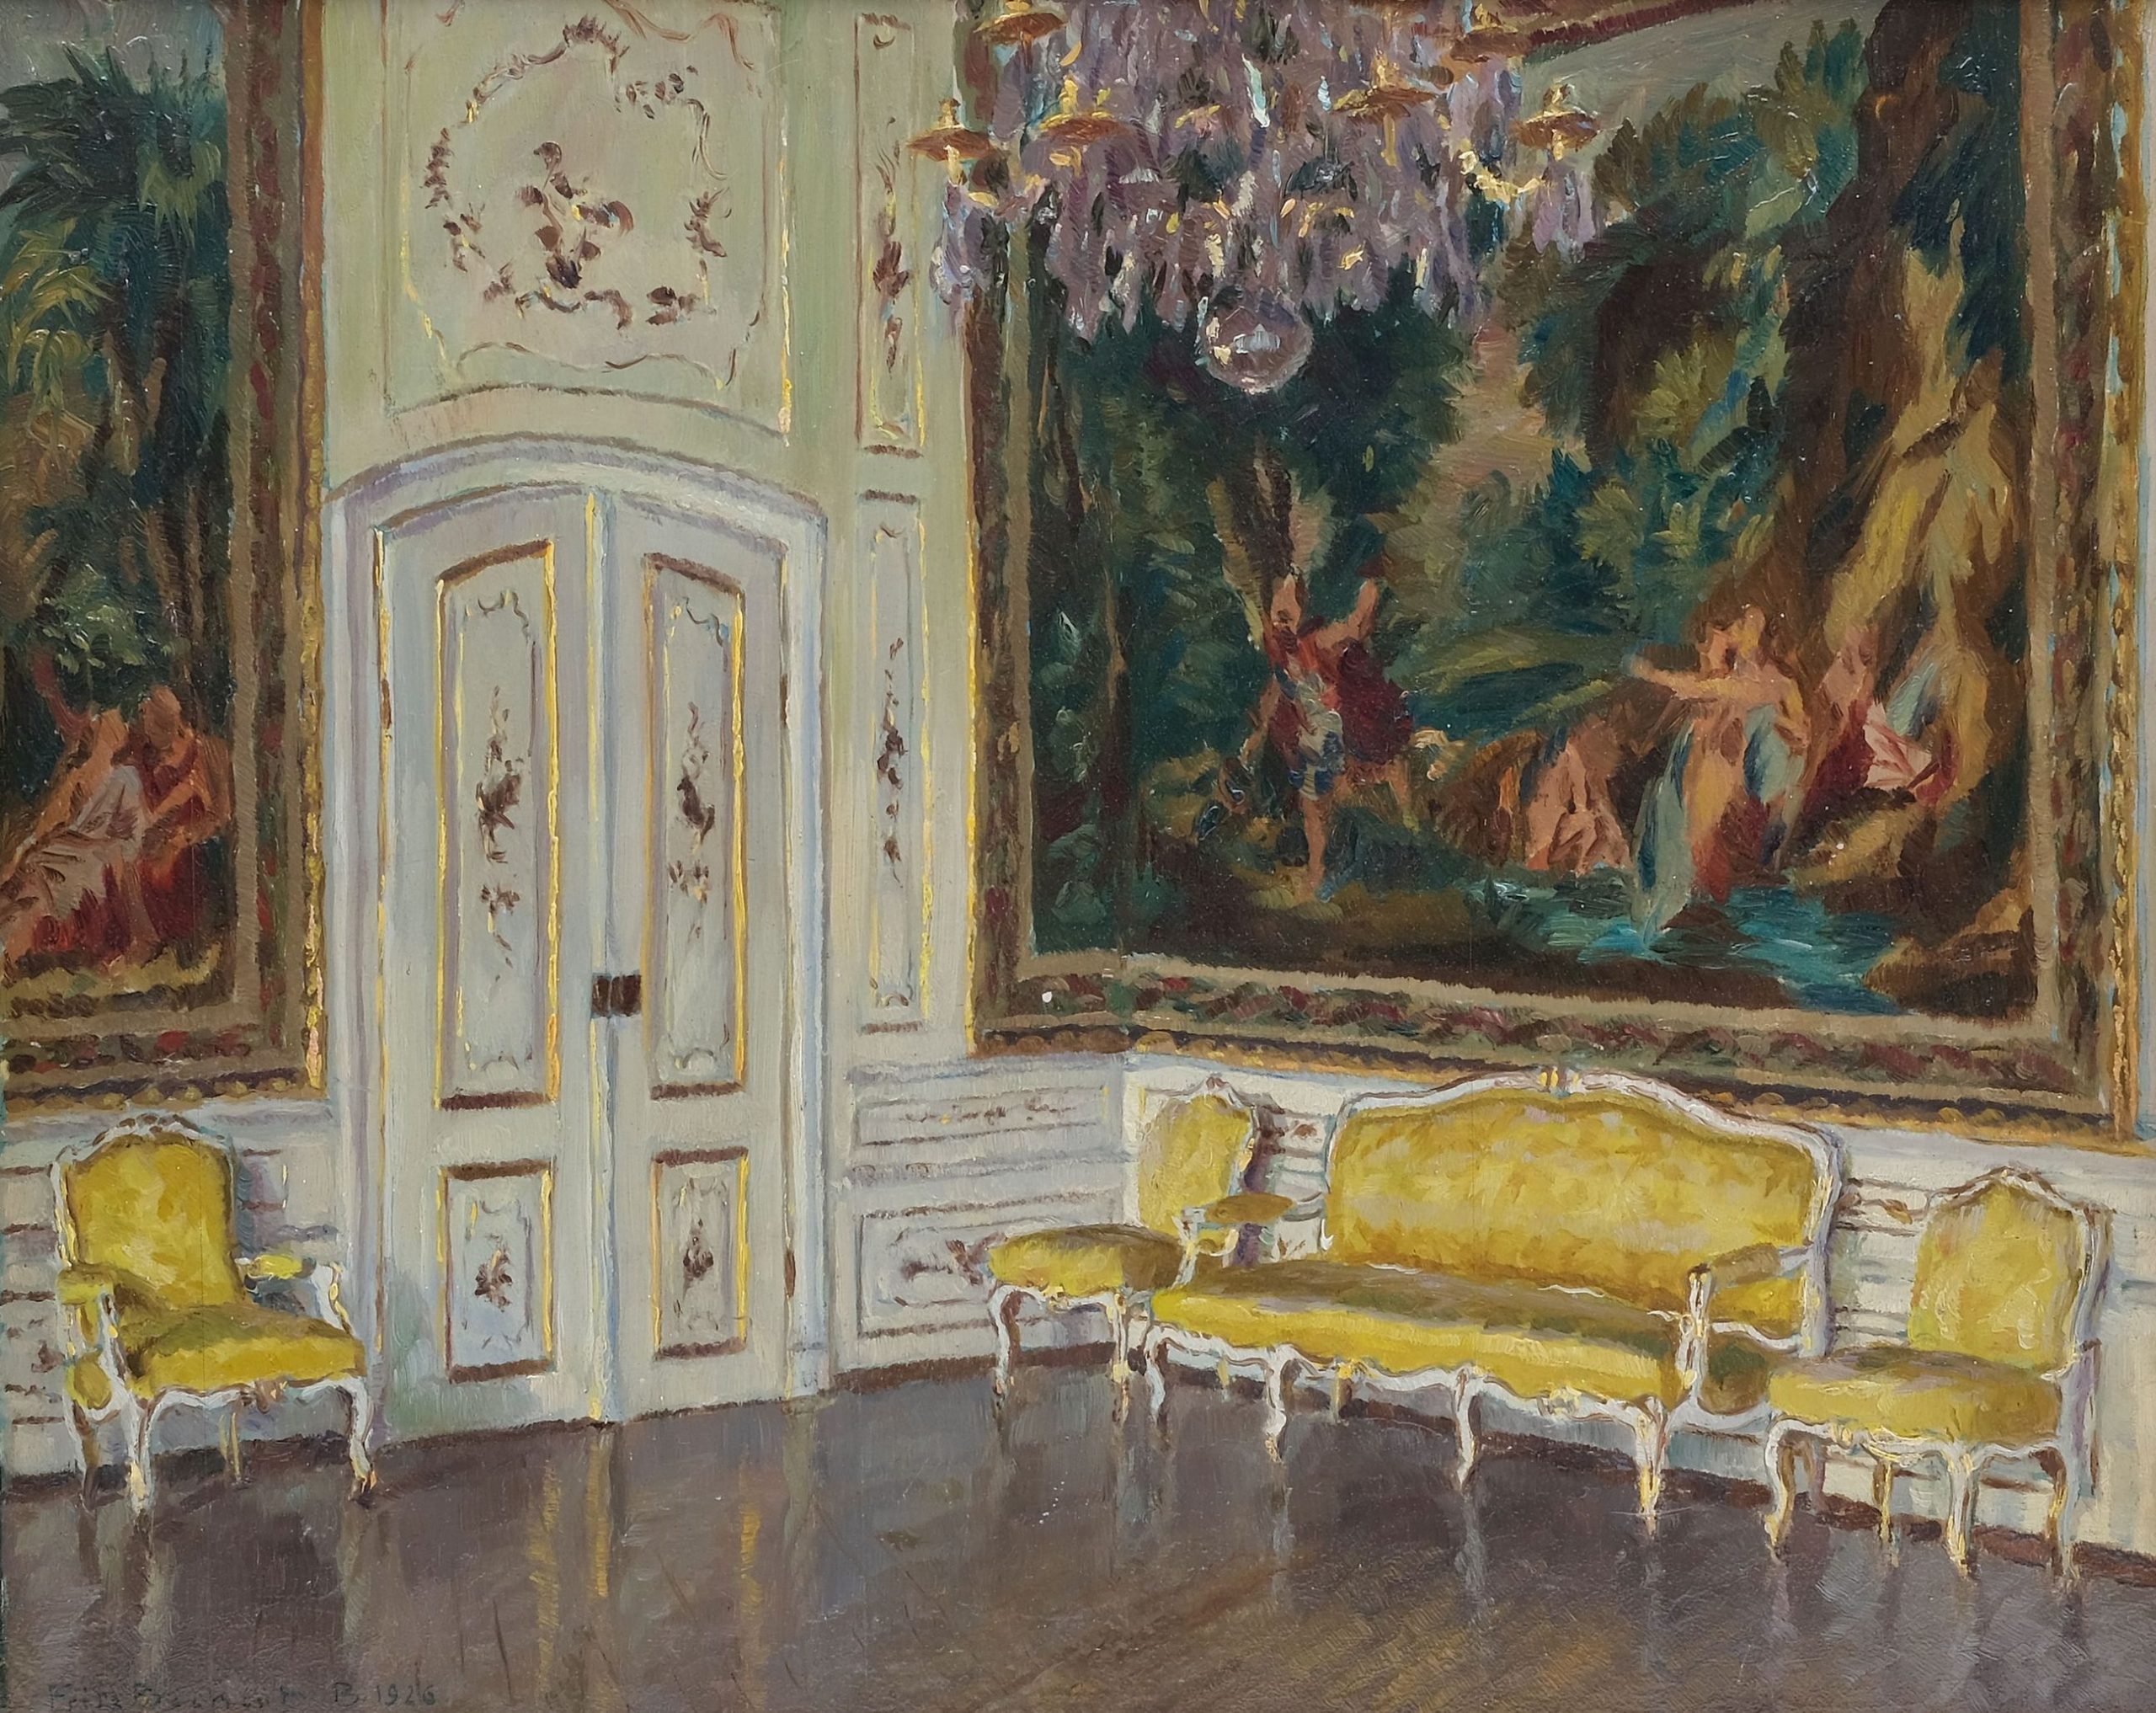 Gemälde Im Gobelinsaal von Schloss Bayreuth von Fritz Beckert, Dresden